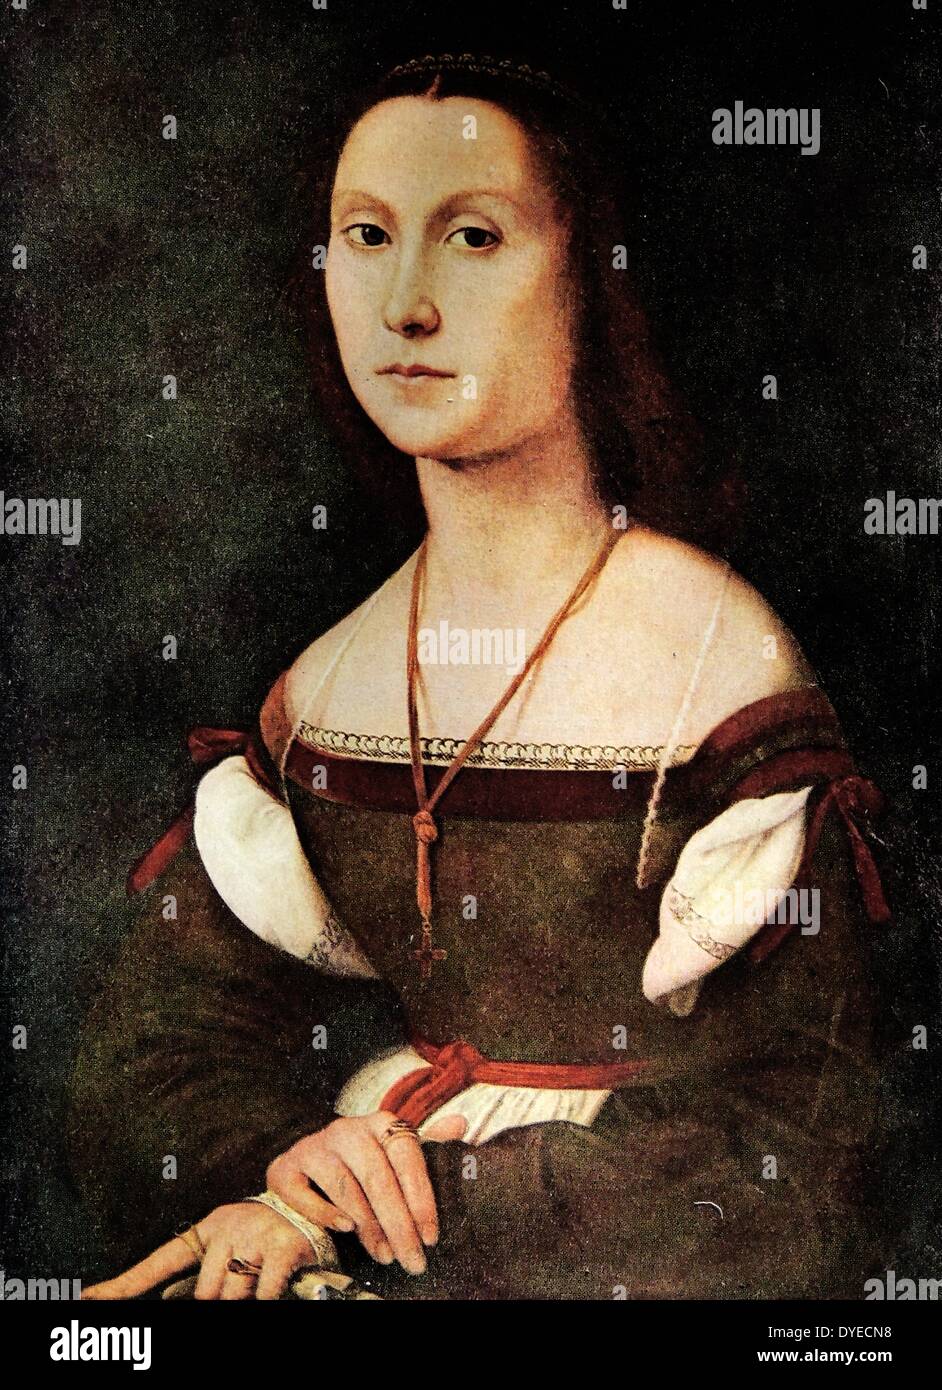 Bildnis einer Dame von Raffaello Sanzio da Urbino gemalt, auch bekannt als Raphael, (1483-1520), italienischer Maler und Architekt der Renaissance. Vom 16. Jahrhundert Stockfoto